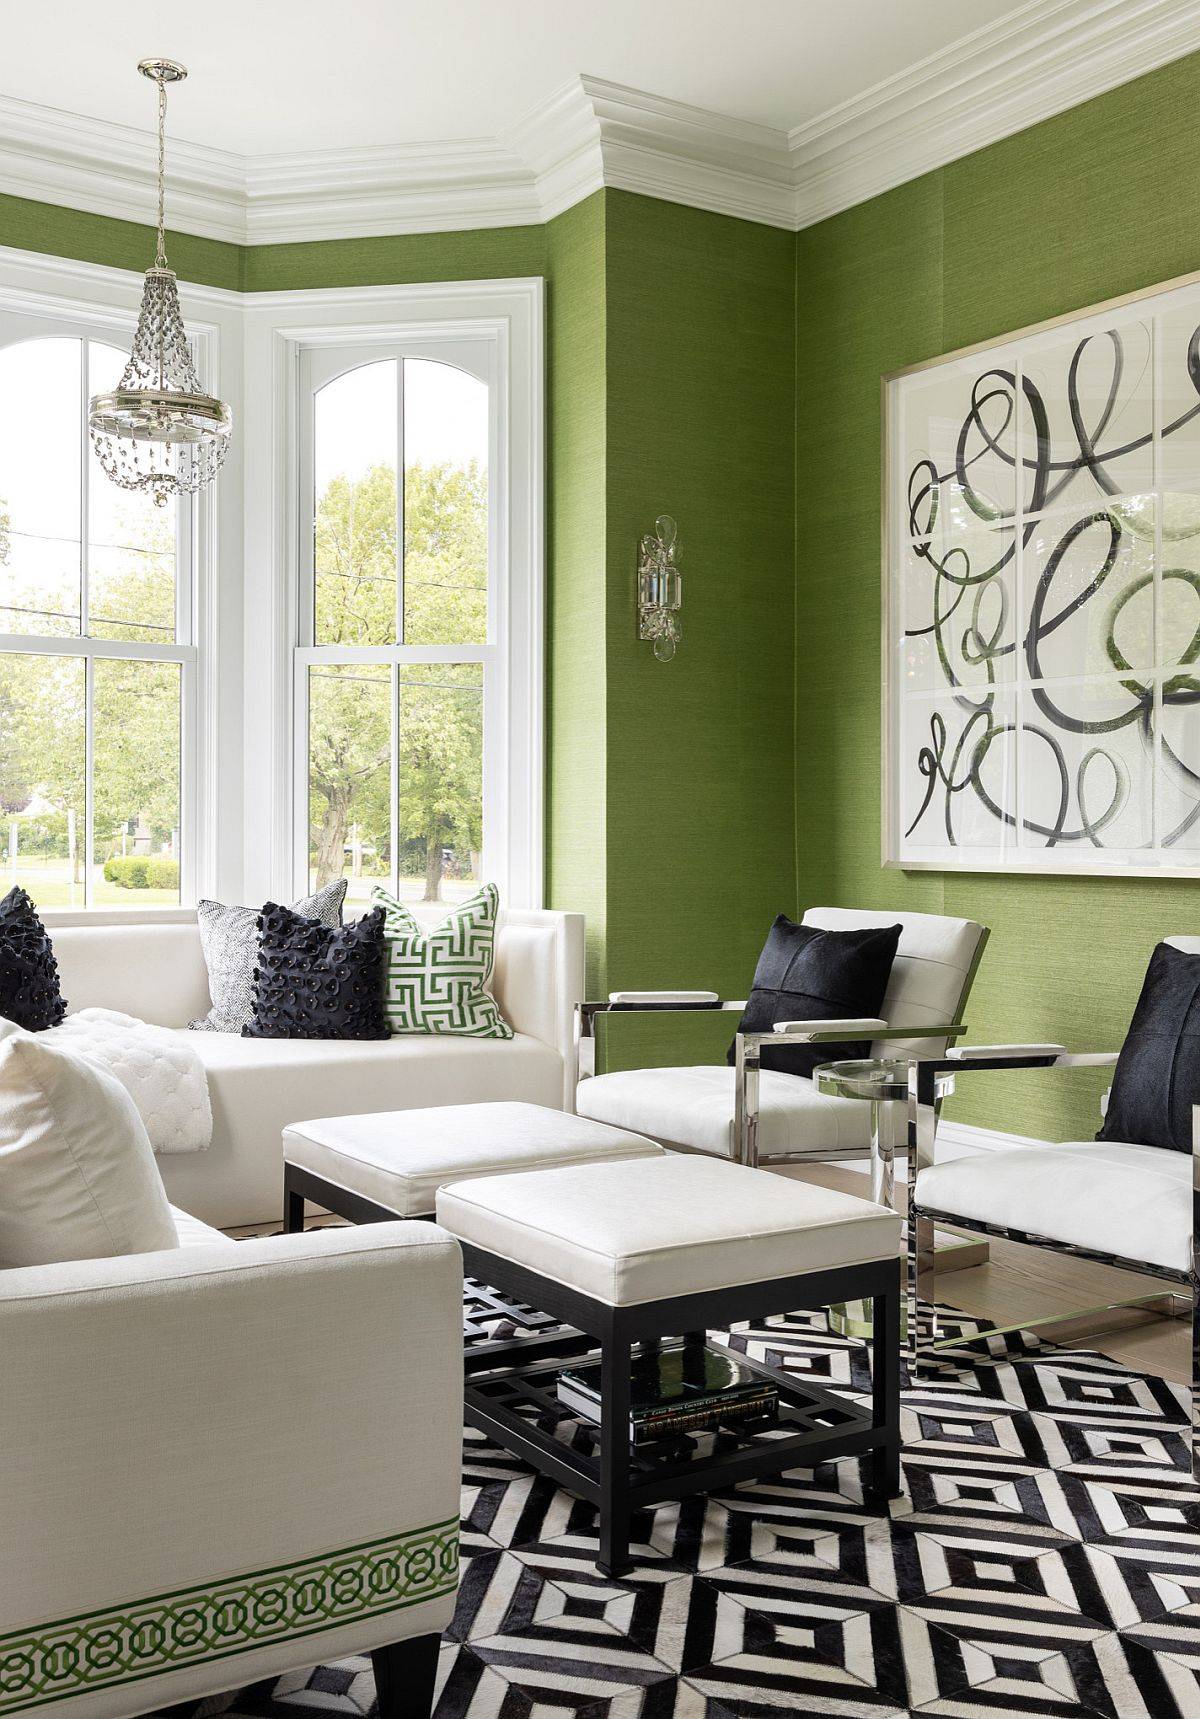 Giấy dán tường  màu xanh lá cây cho phòng khách rộng rãi với các chi tiết trang trí màu trắng